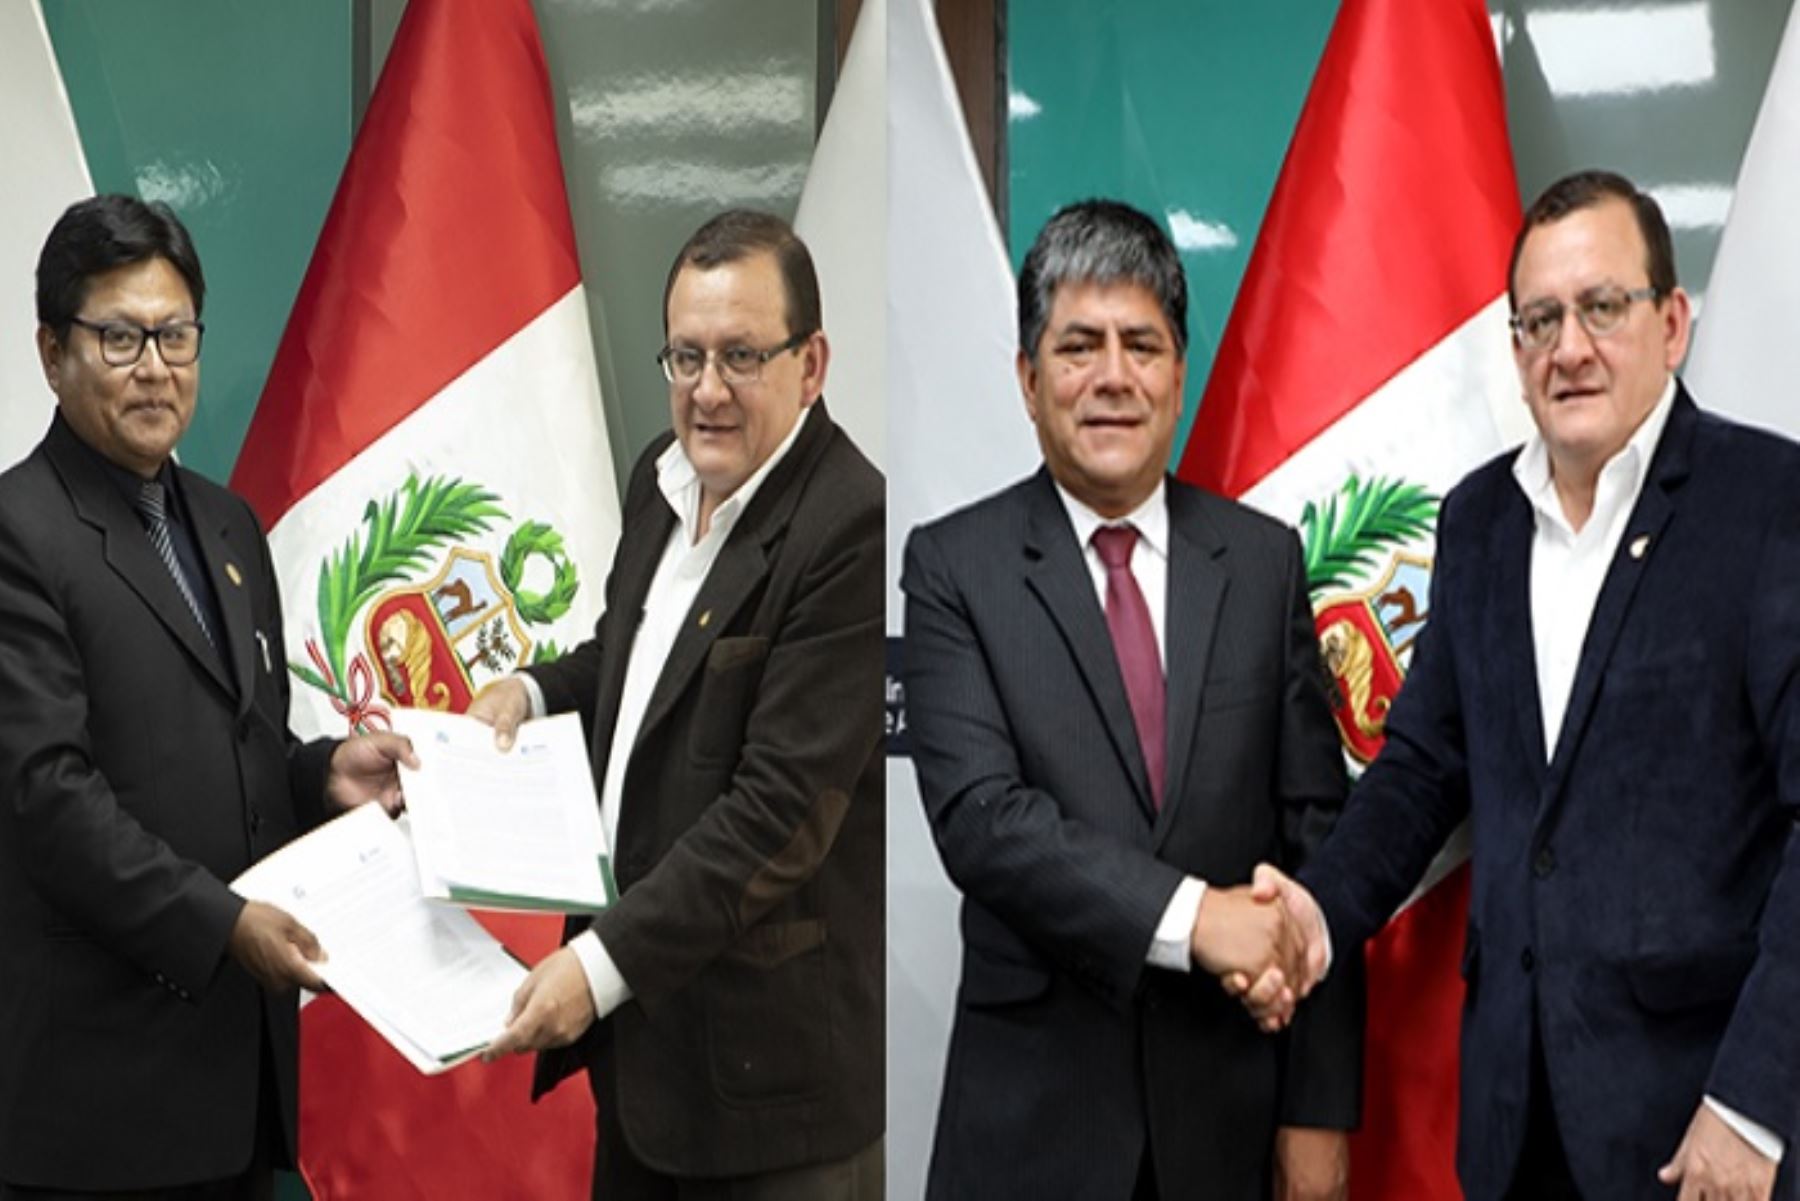 El convenio permitirá a los gobernadores regionales de Ayacucho y Puno, desarrollar instrumentos de mitigación y control durante las temporadas de emergencia.